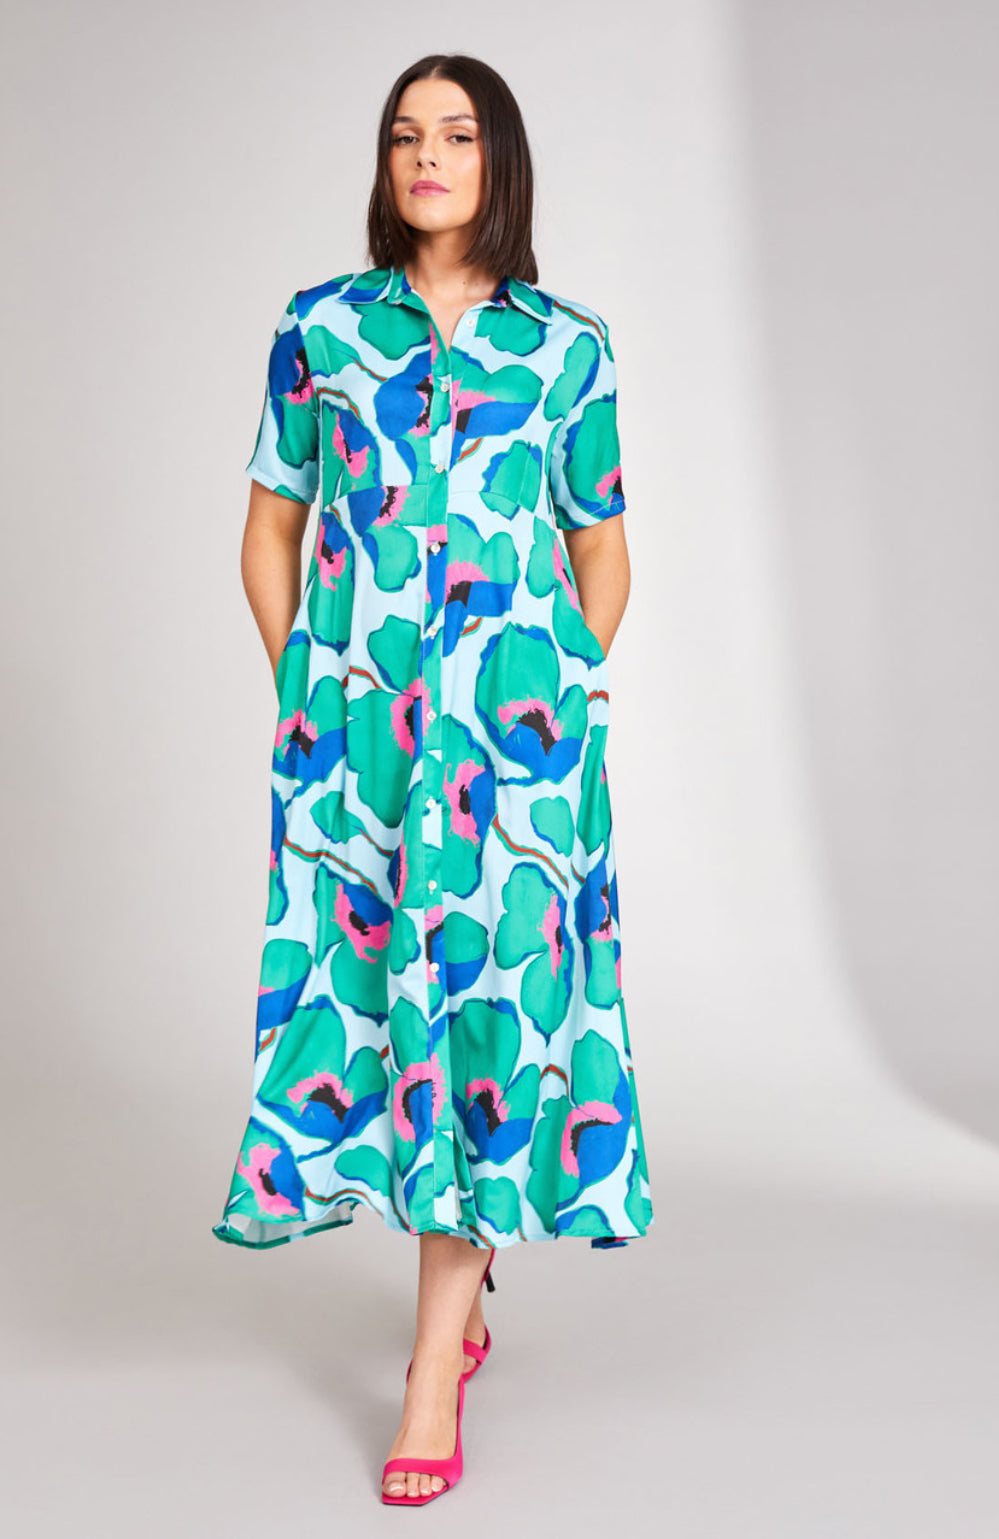 513 Aqua Print Dress - Peruzzi